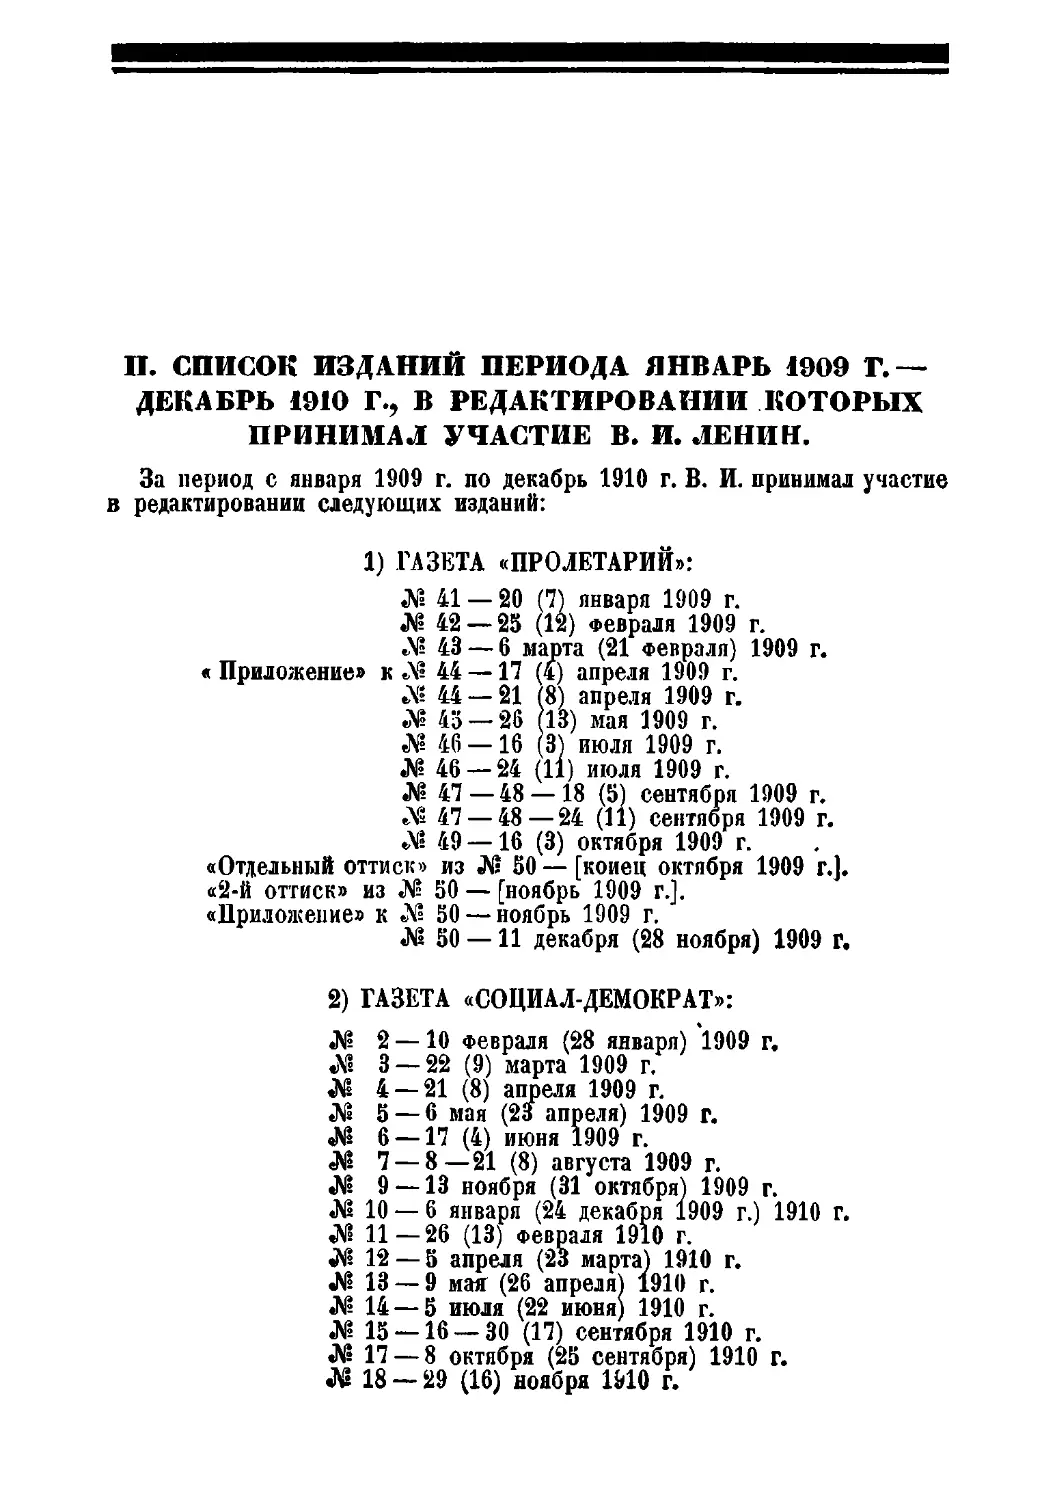 II. Список изданий периода январь 1909 г. — декабрь 1910 г., в редактировании которых принимал участие В. И. Ленин